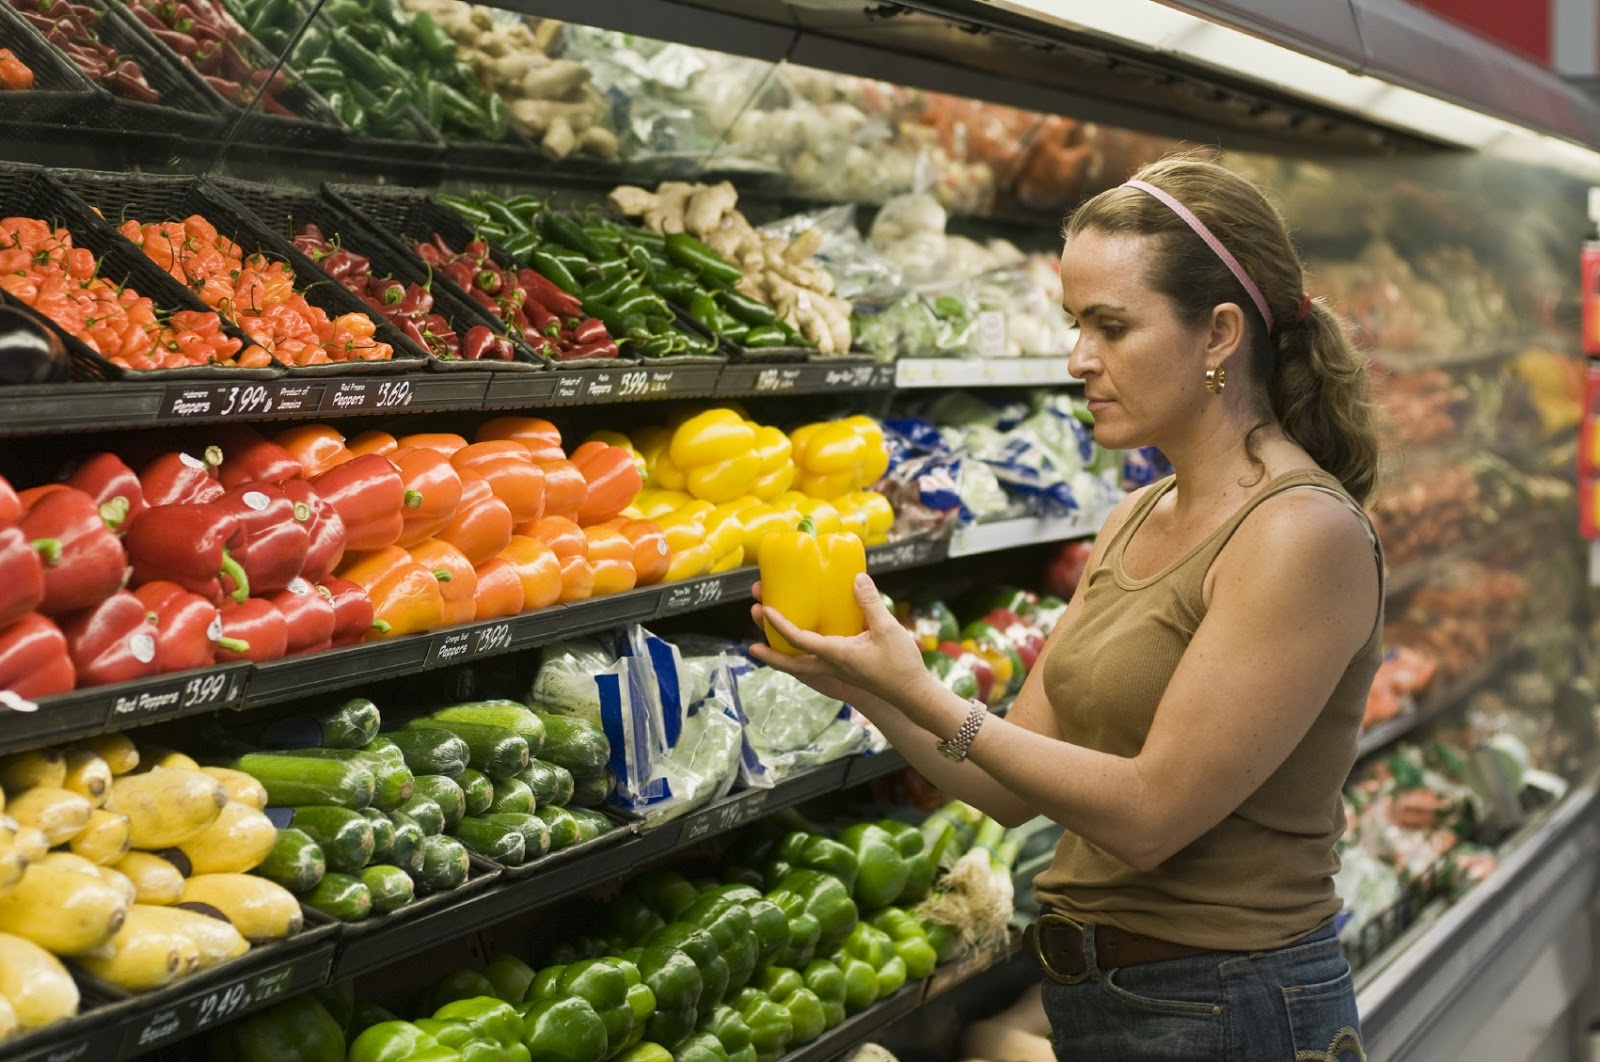 Un mes comiendo 'comida real': el reto saludable que se ha hecho viral